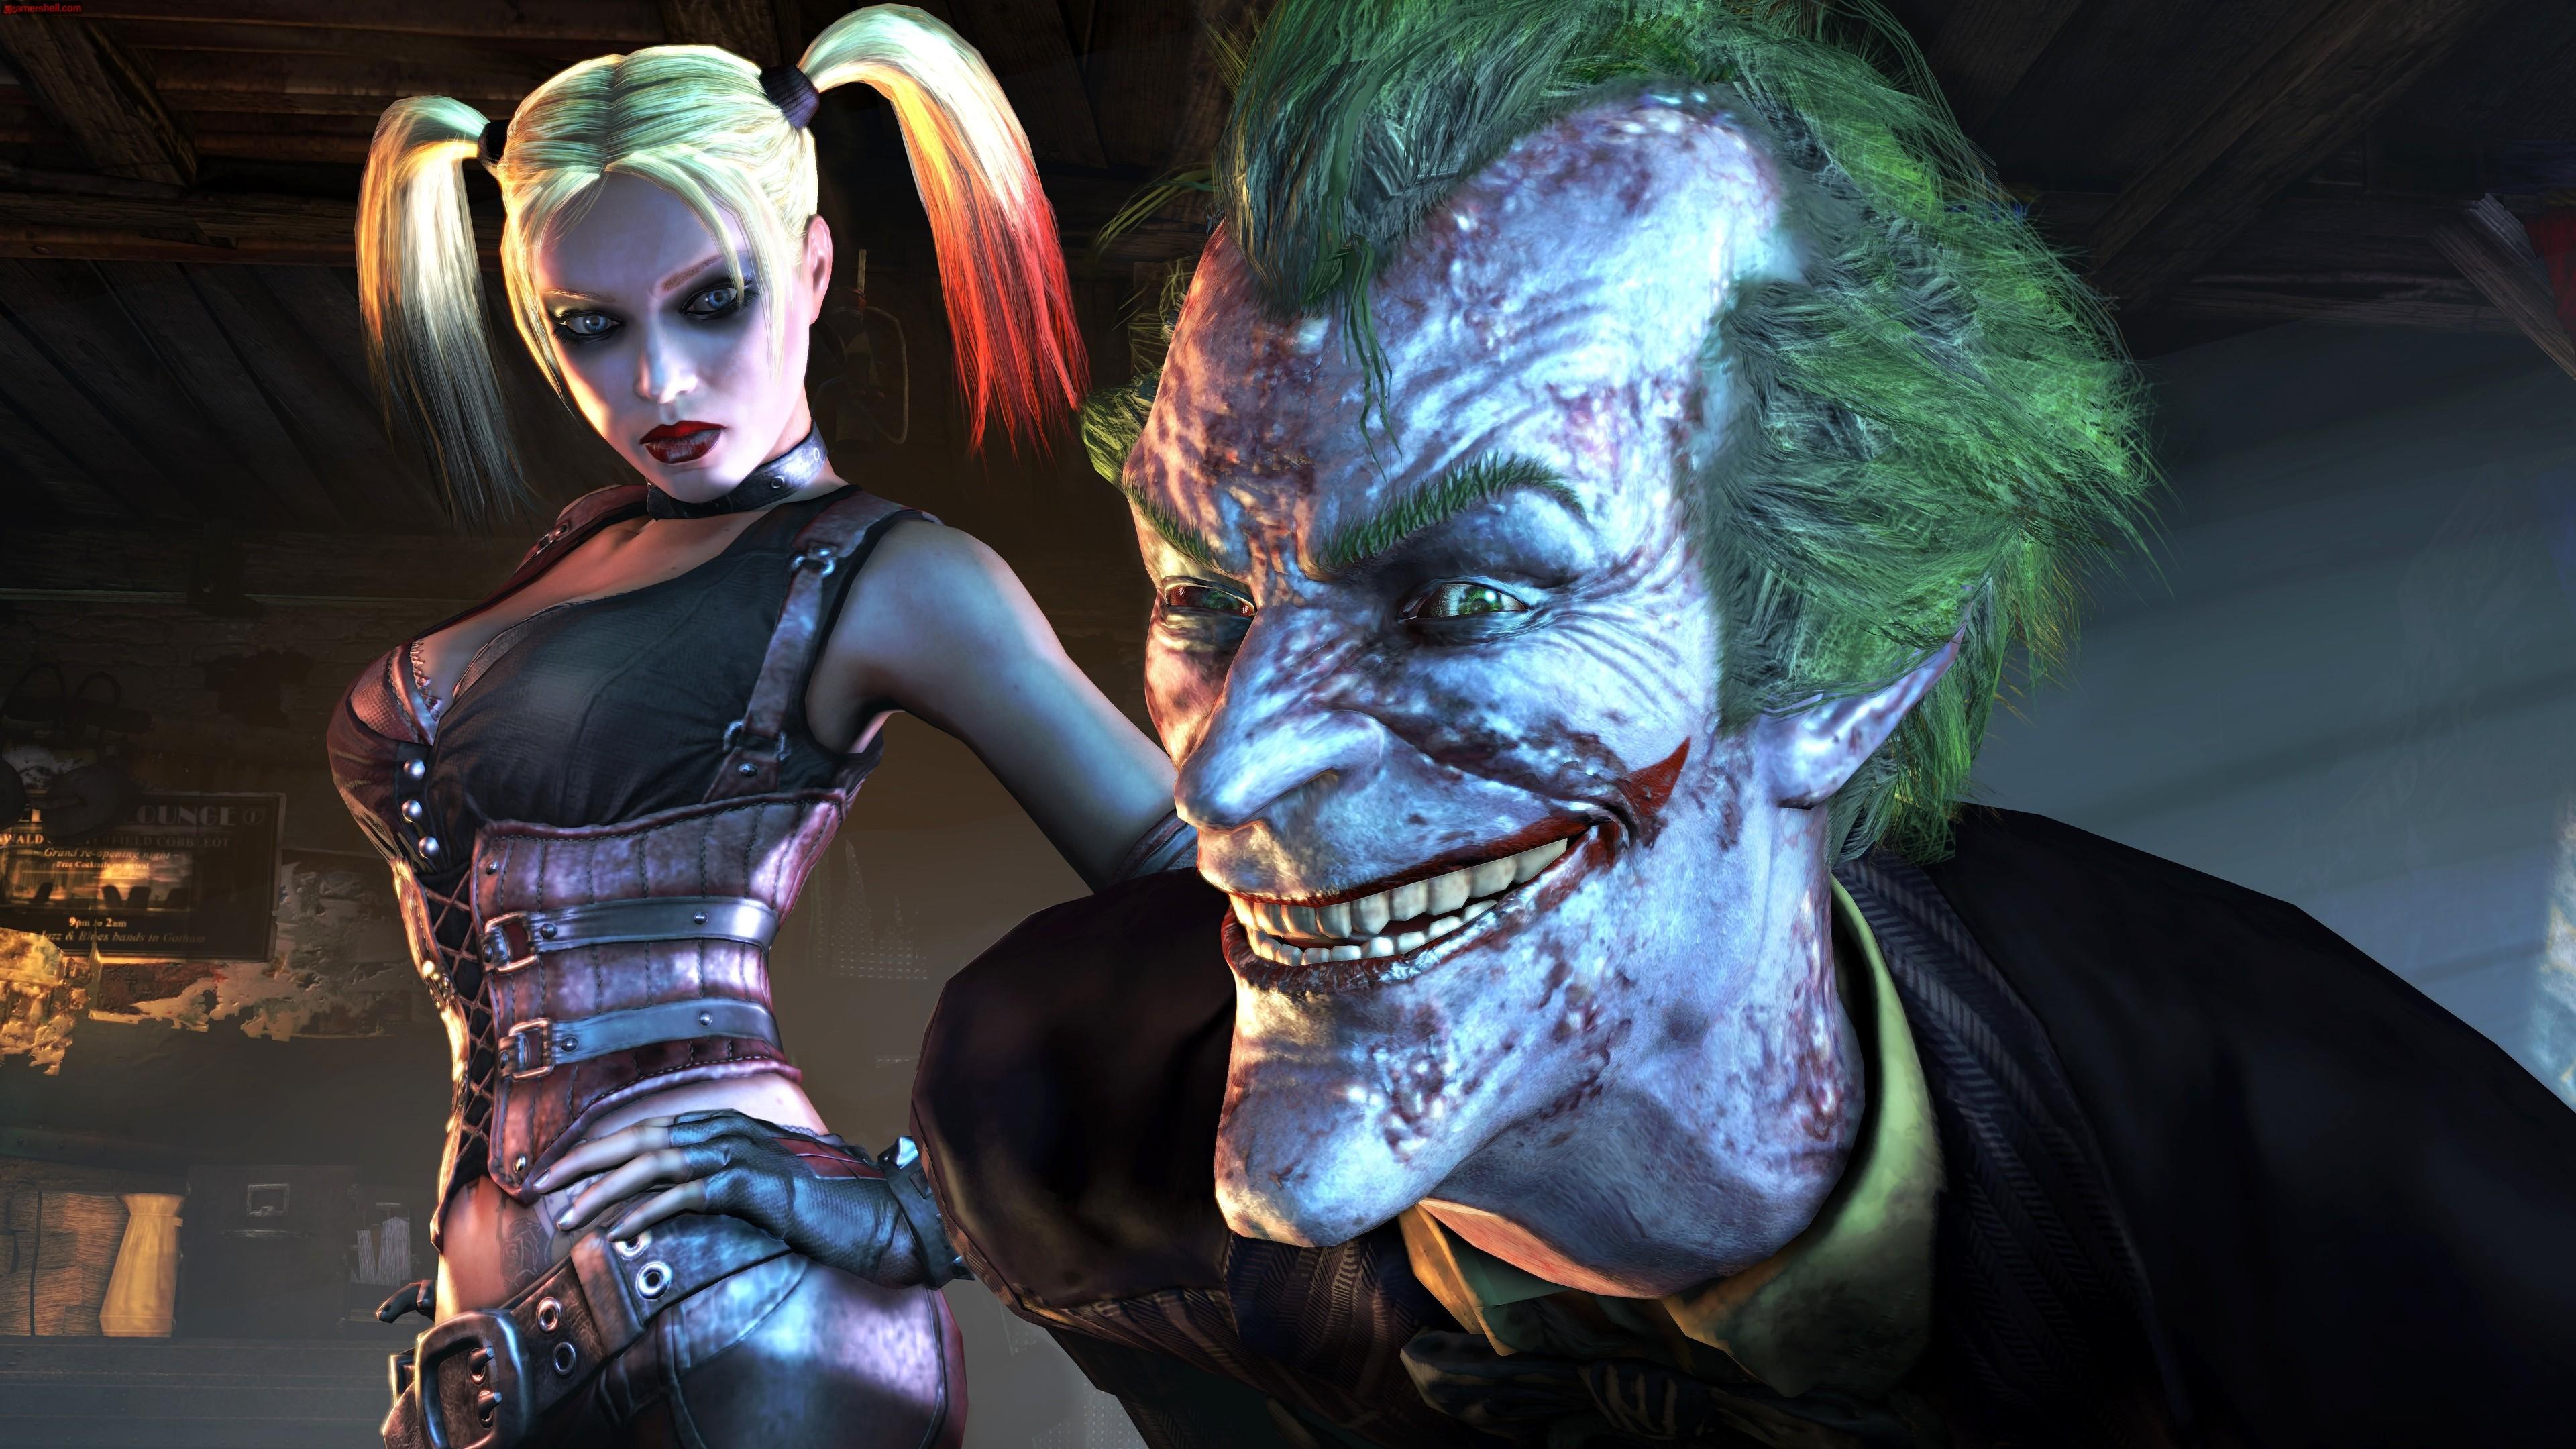 3840 x 2160 · jpeg - Joker And Harley Quinn supervillain wallpapers, joker wallpapers, hd ...